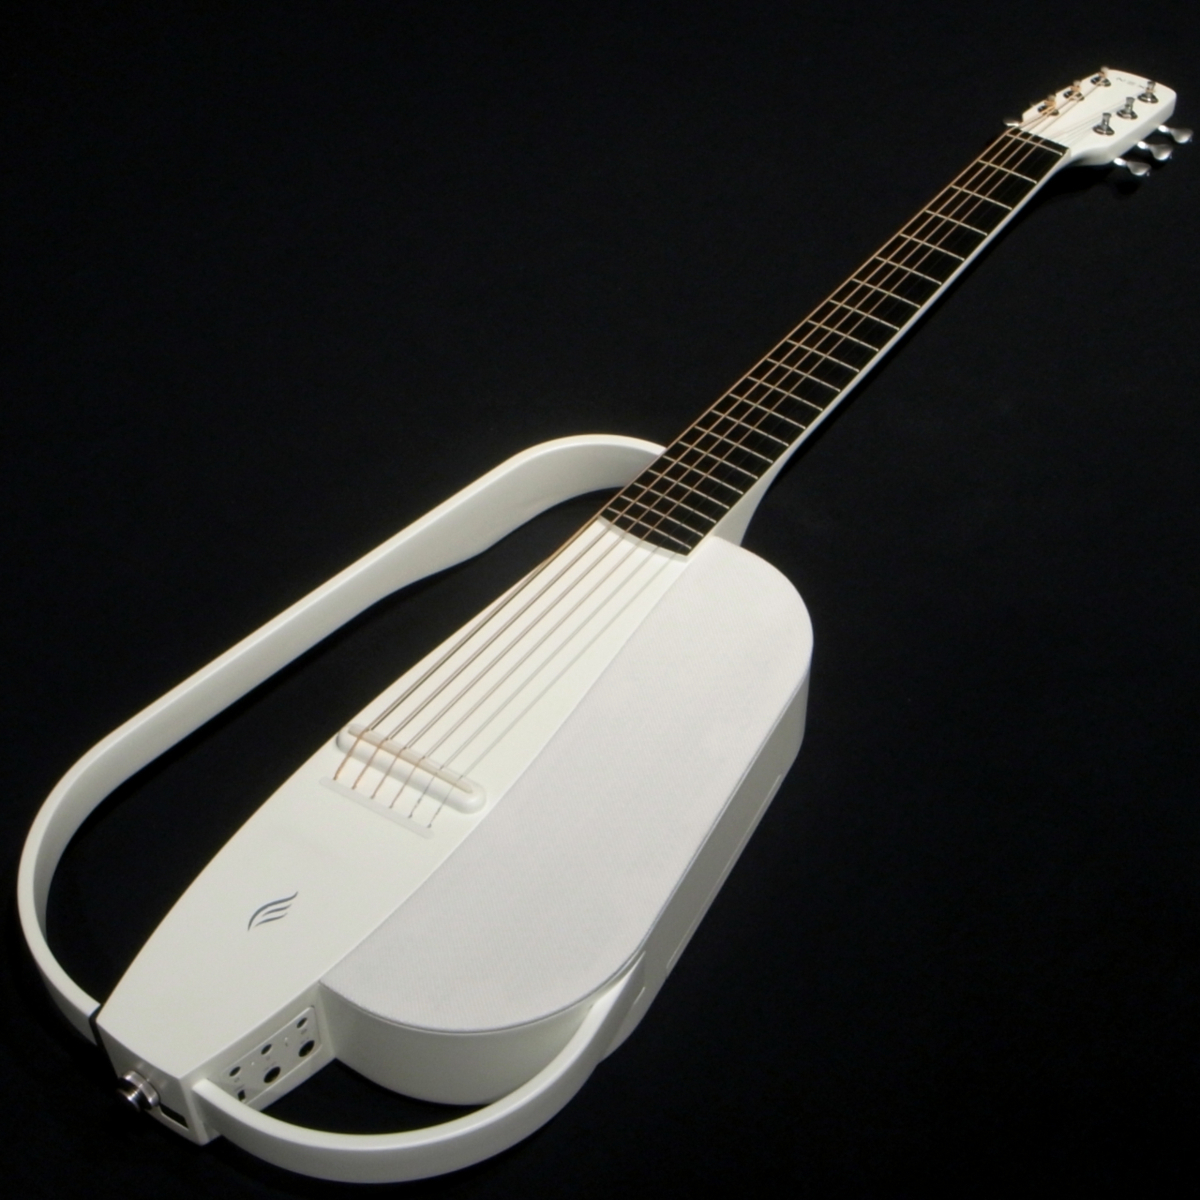 # витрина выставленный товар ENYA Guitars NEXG WHT 50W динамик встроенный электроакустическая гитара 